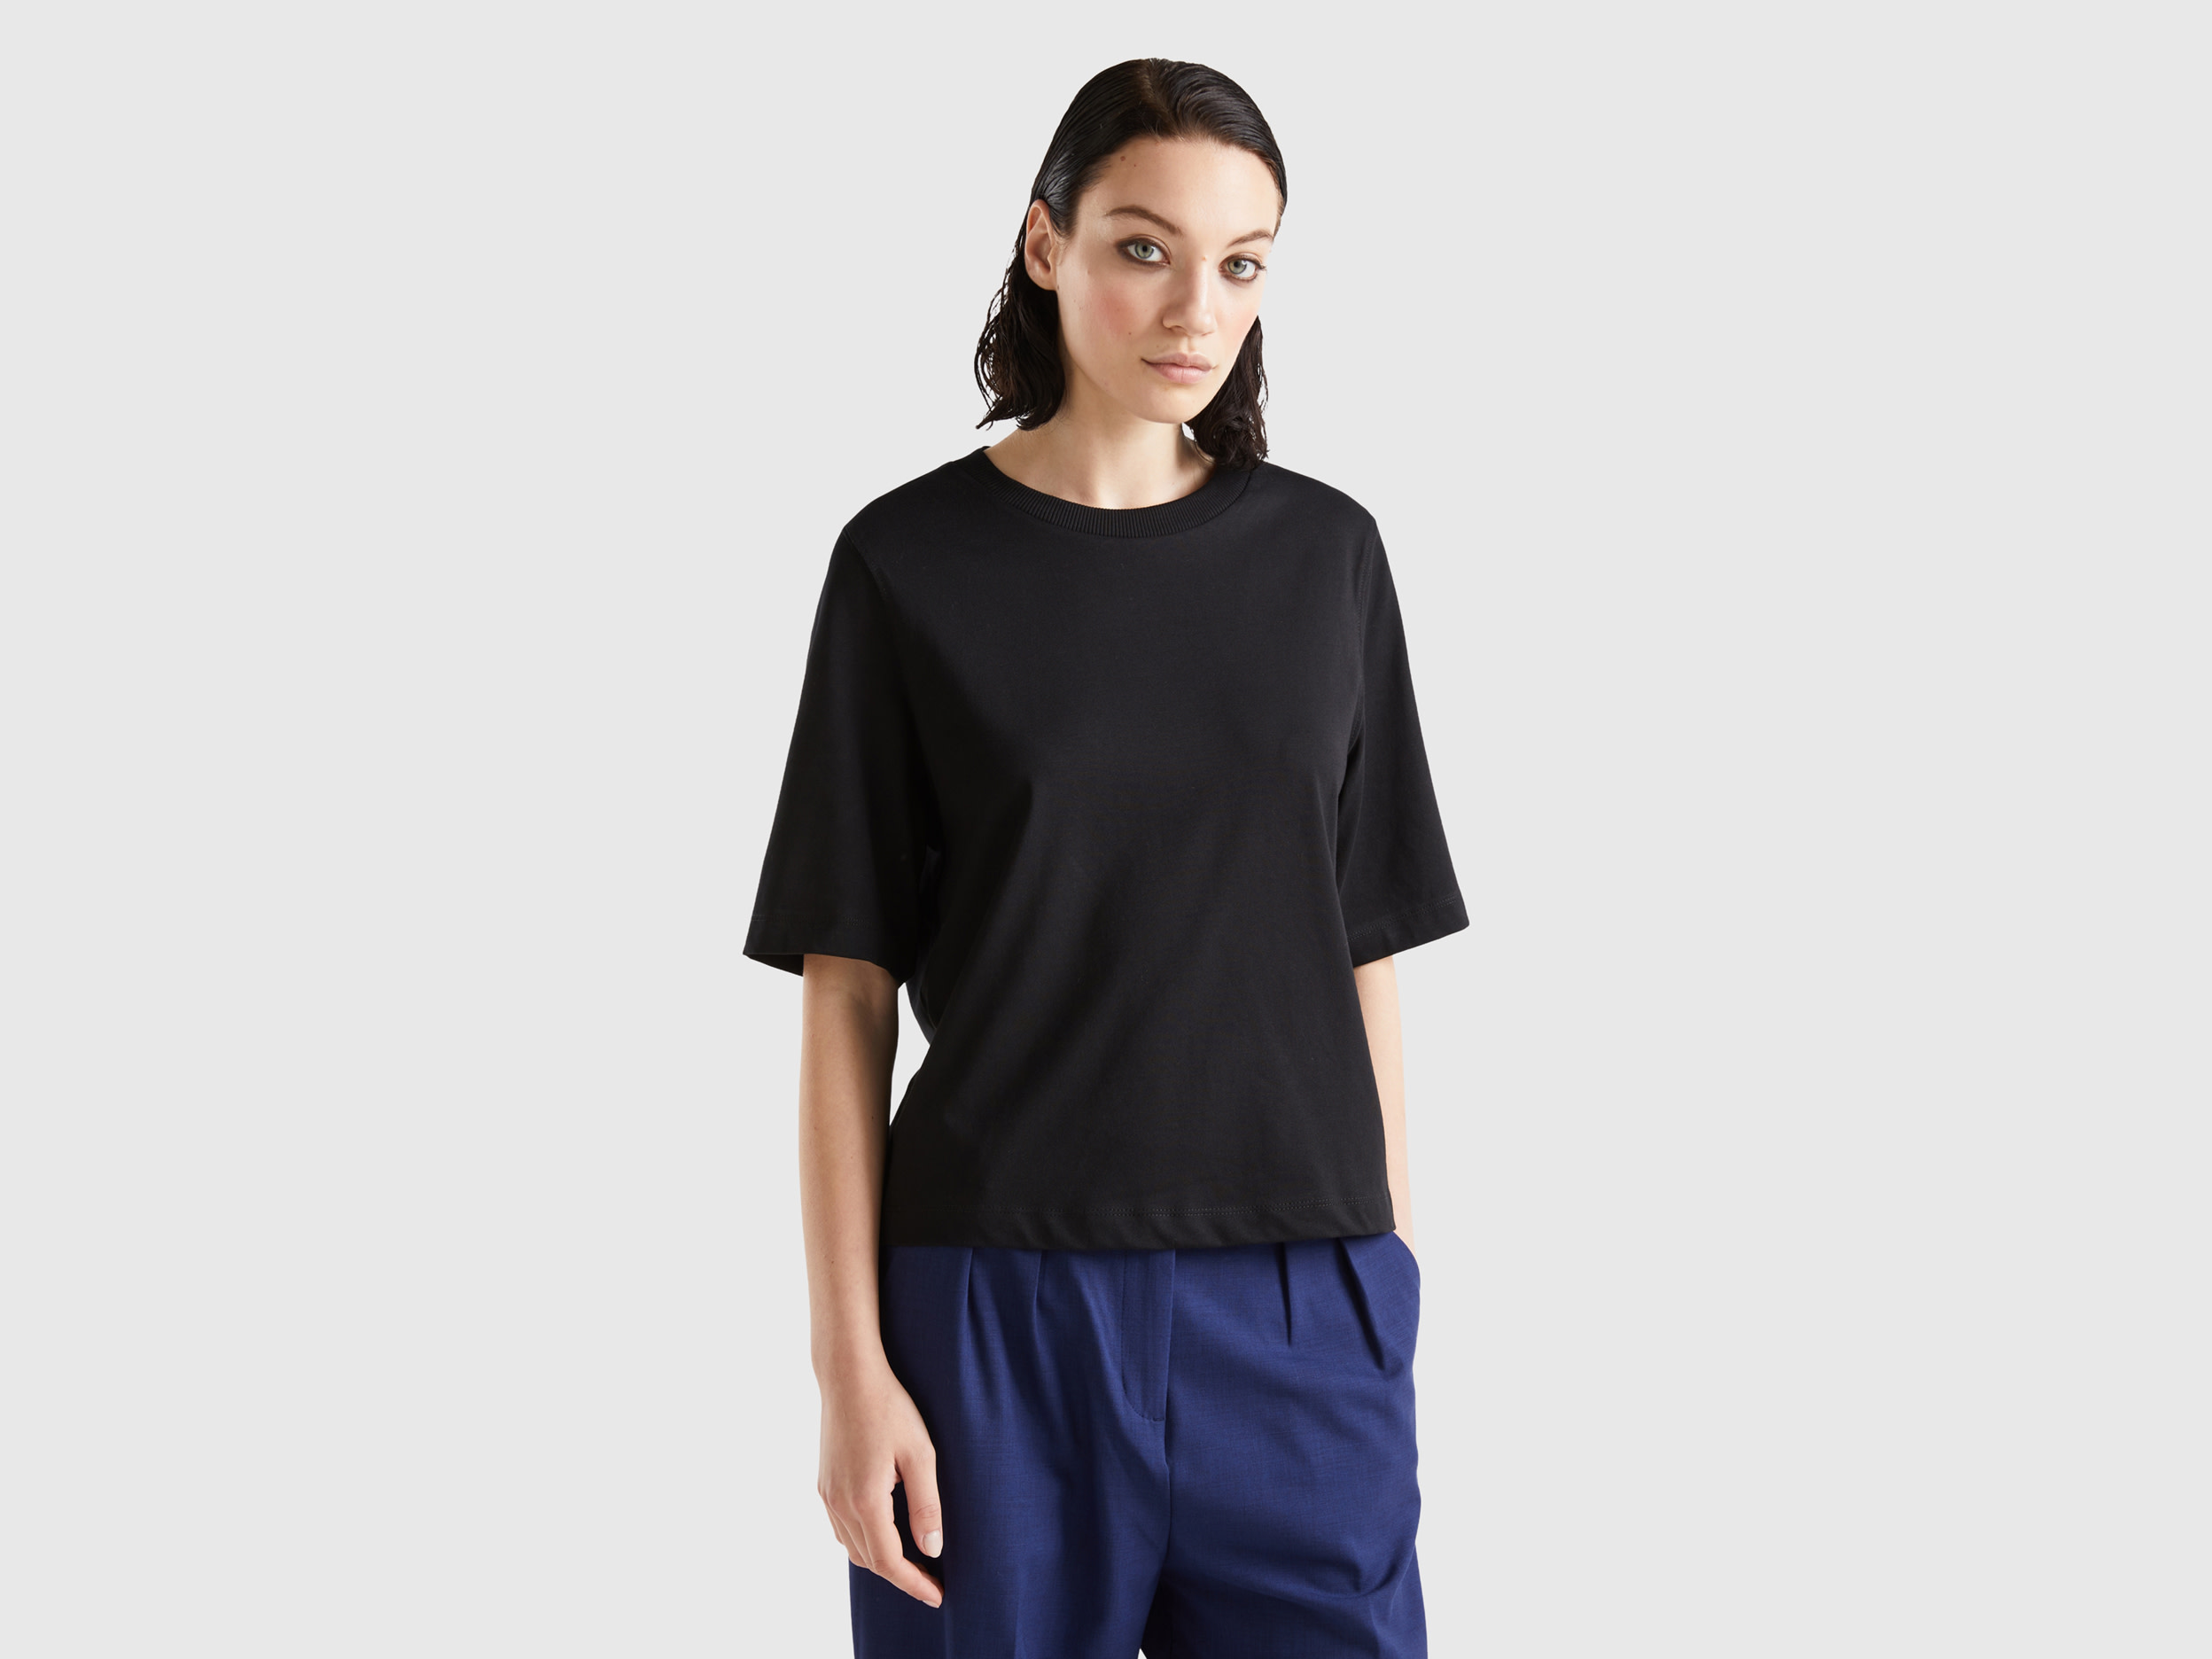 Benetton, 100% Cotton Boxy Fit T-shirt, size XL, Black, Women